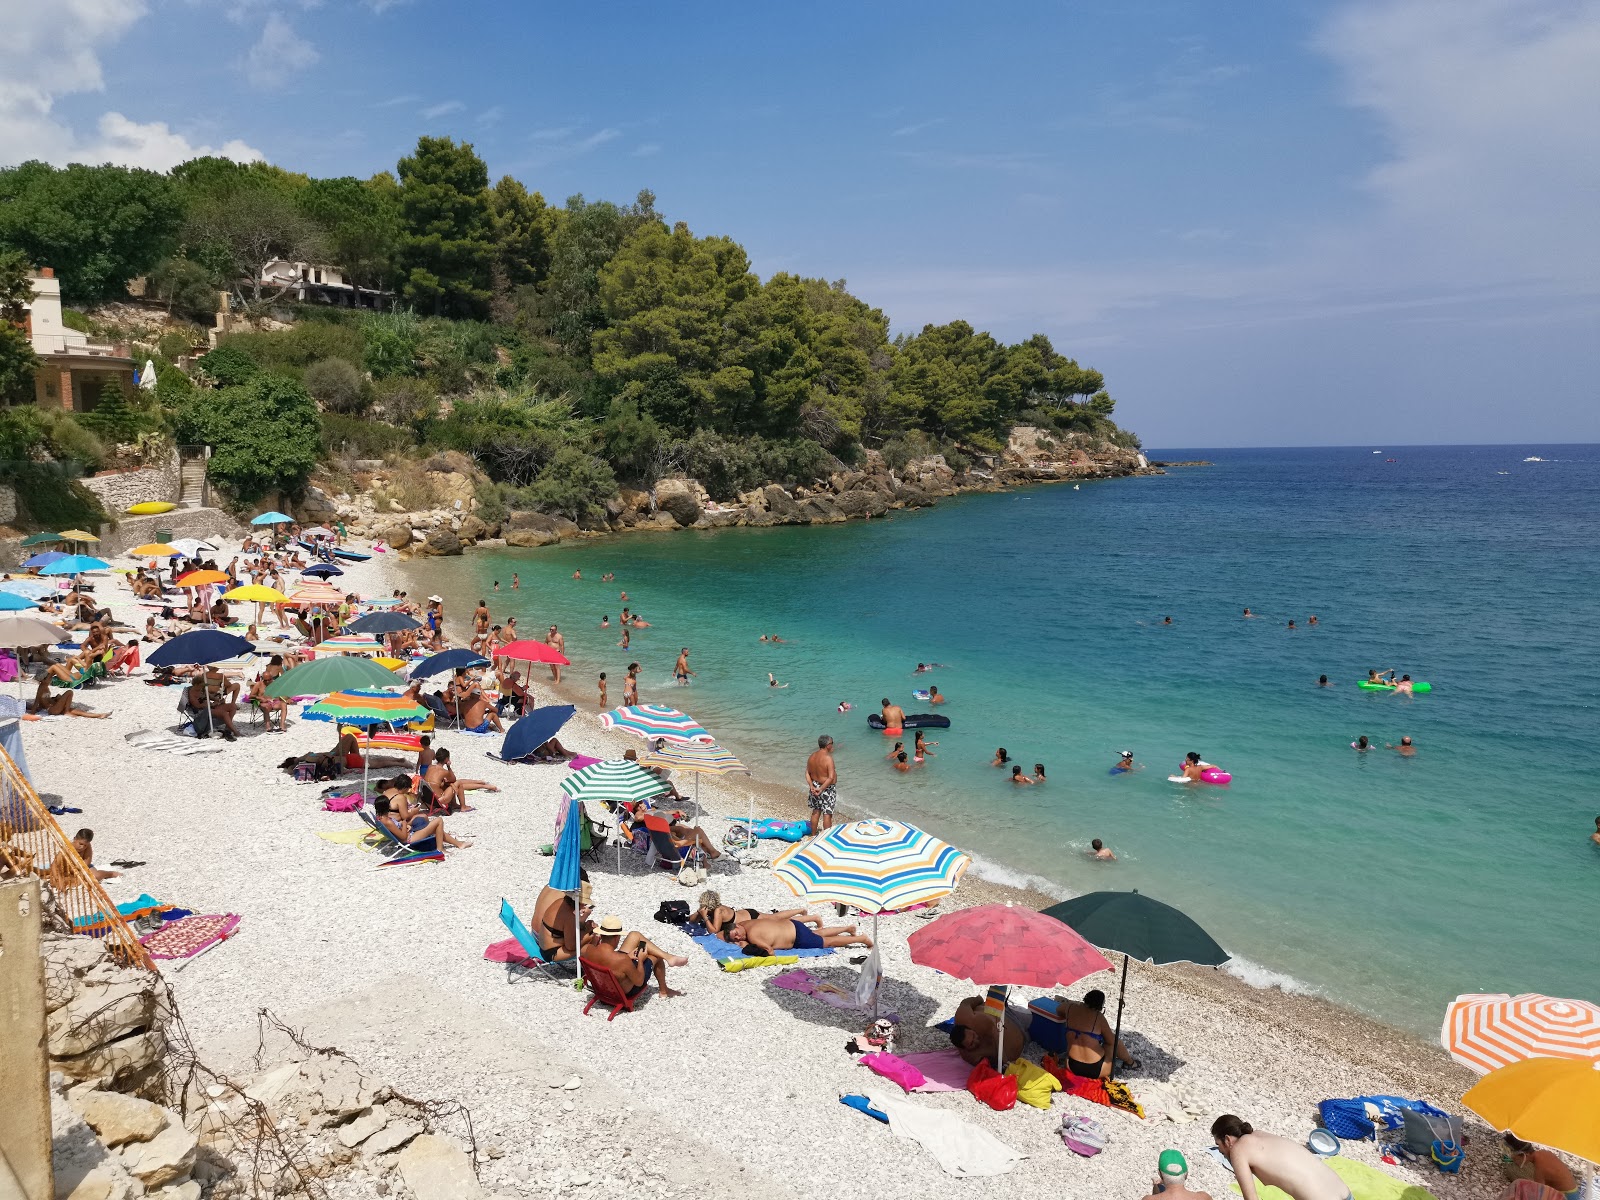 Guidaloca Plajı'in fotoğrafı plaj tatil beldesi alanı